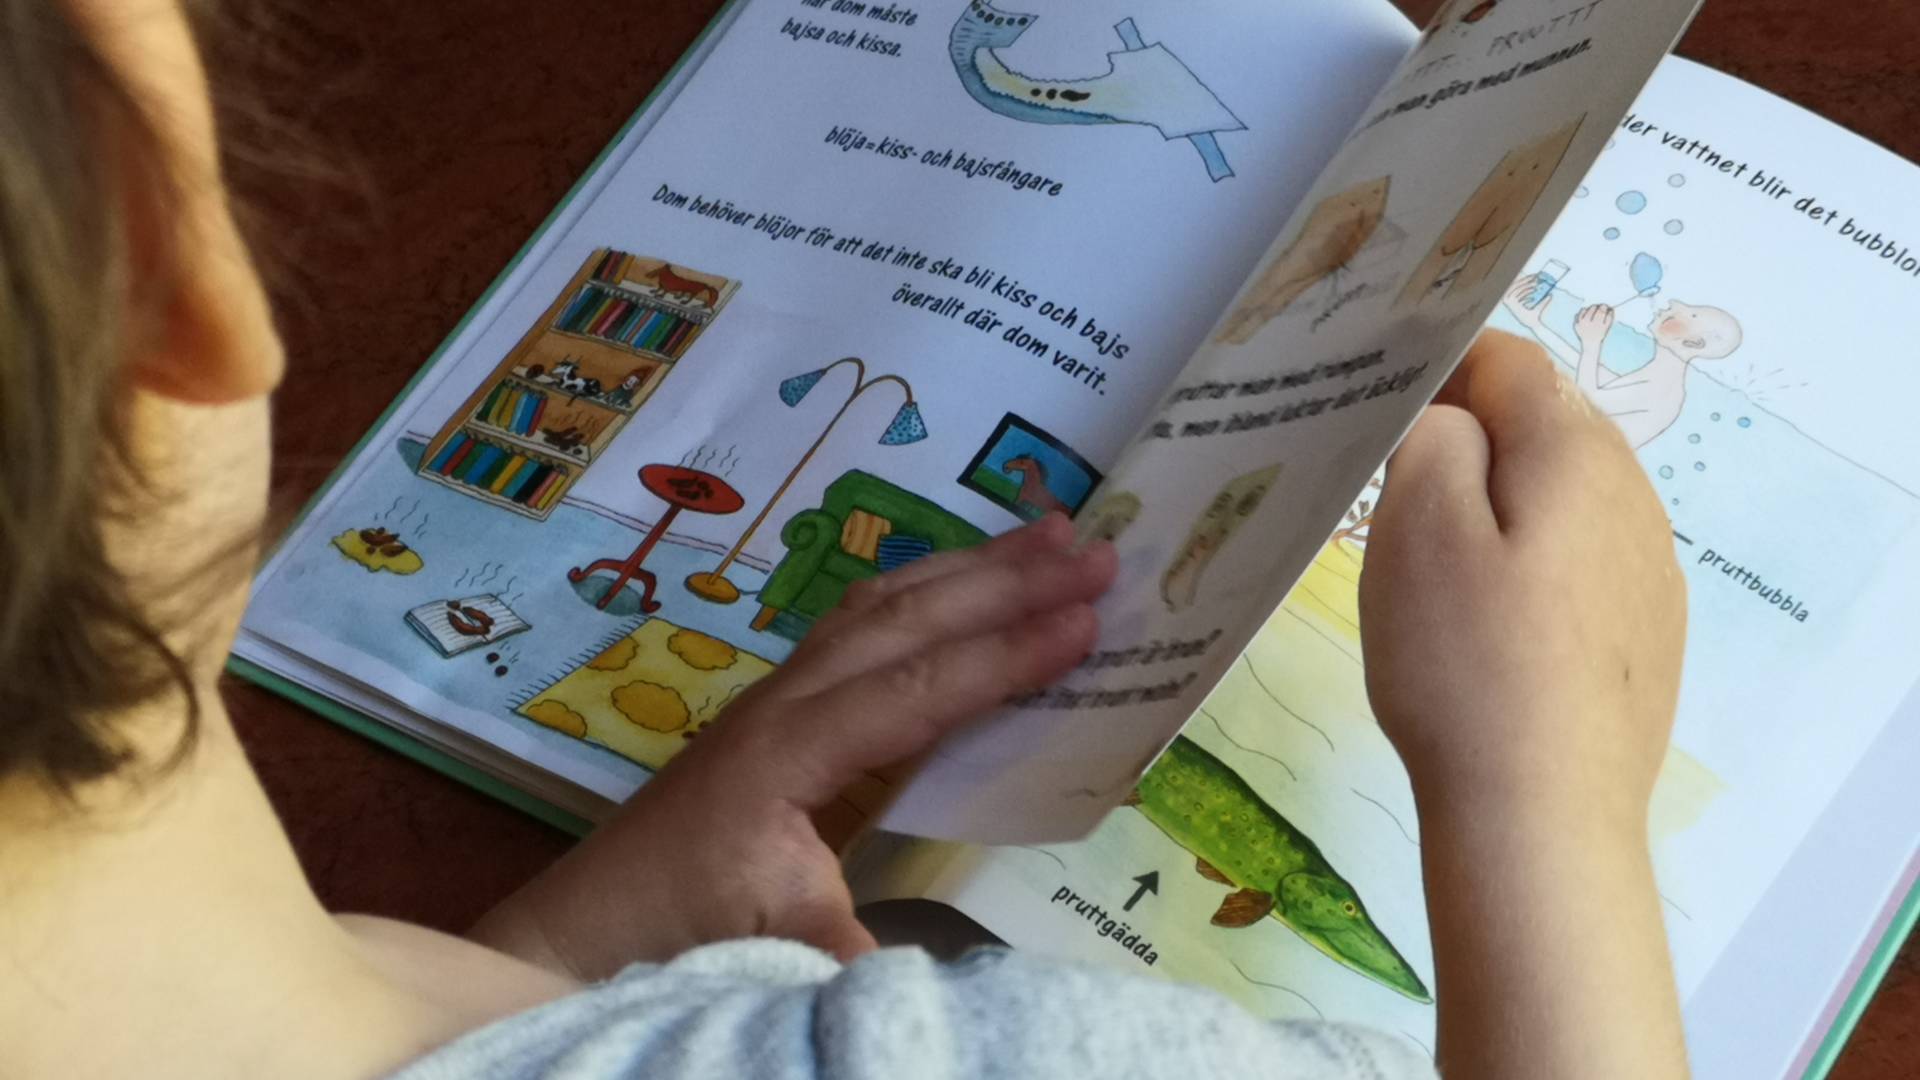 "Siusiak biegnie w pełnym galopie" Książeczki dla dzieci o edukacji seksualnej